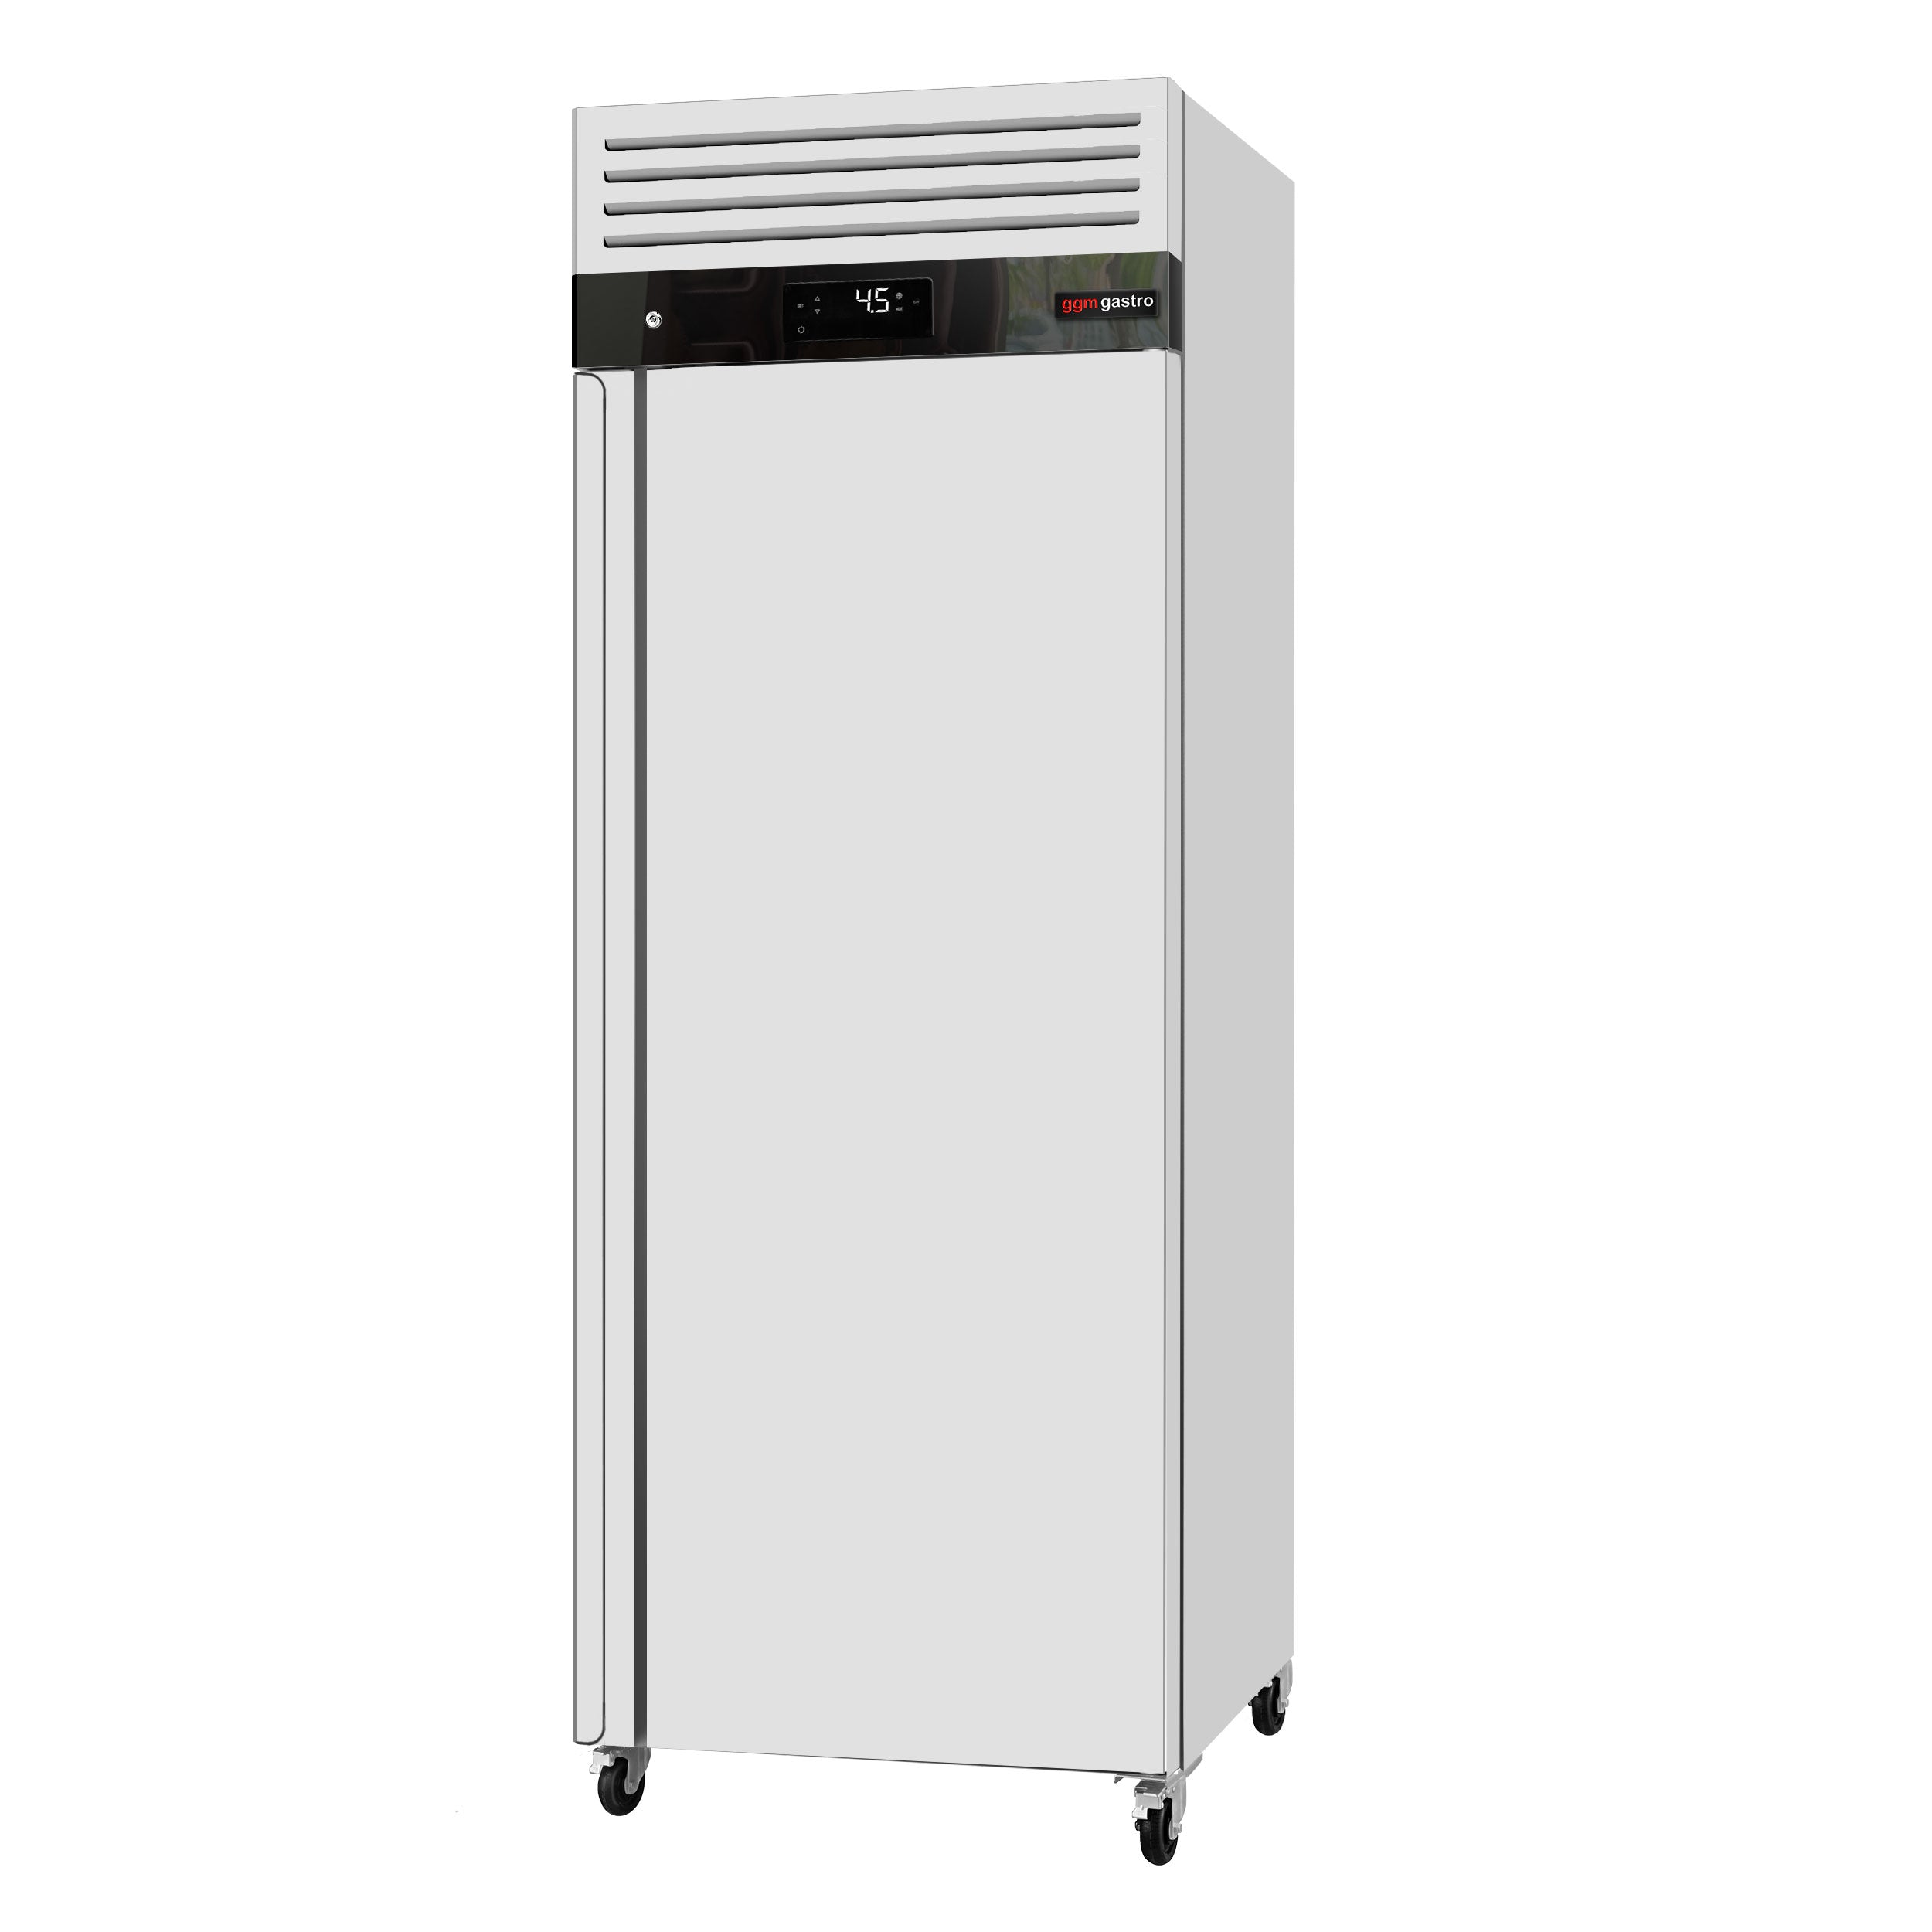 Køleskab ECO - GN 2/1 - 610 liter - 1 dør